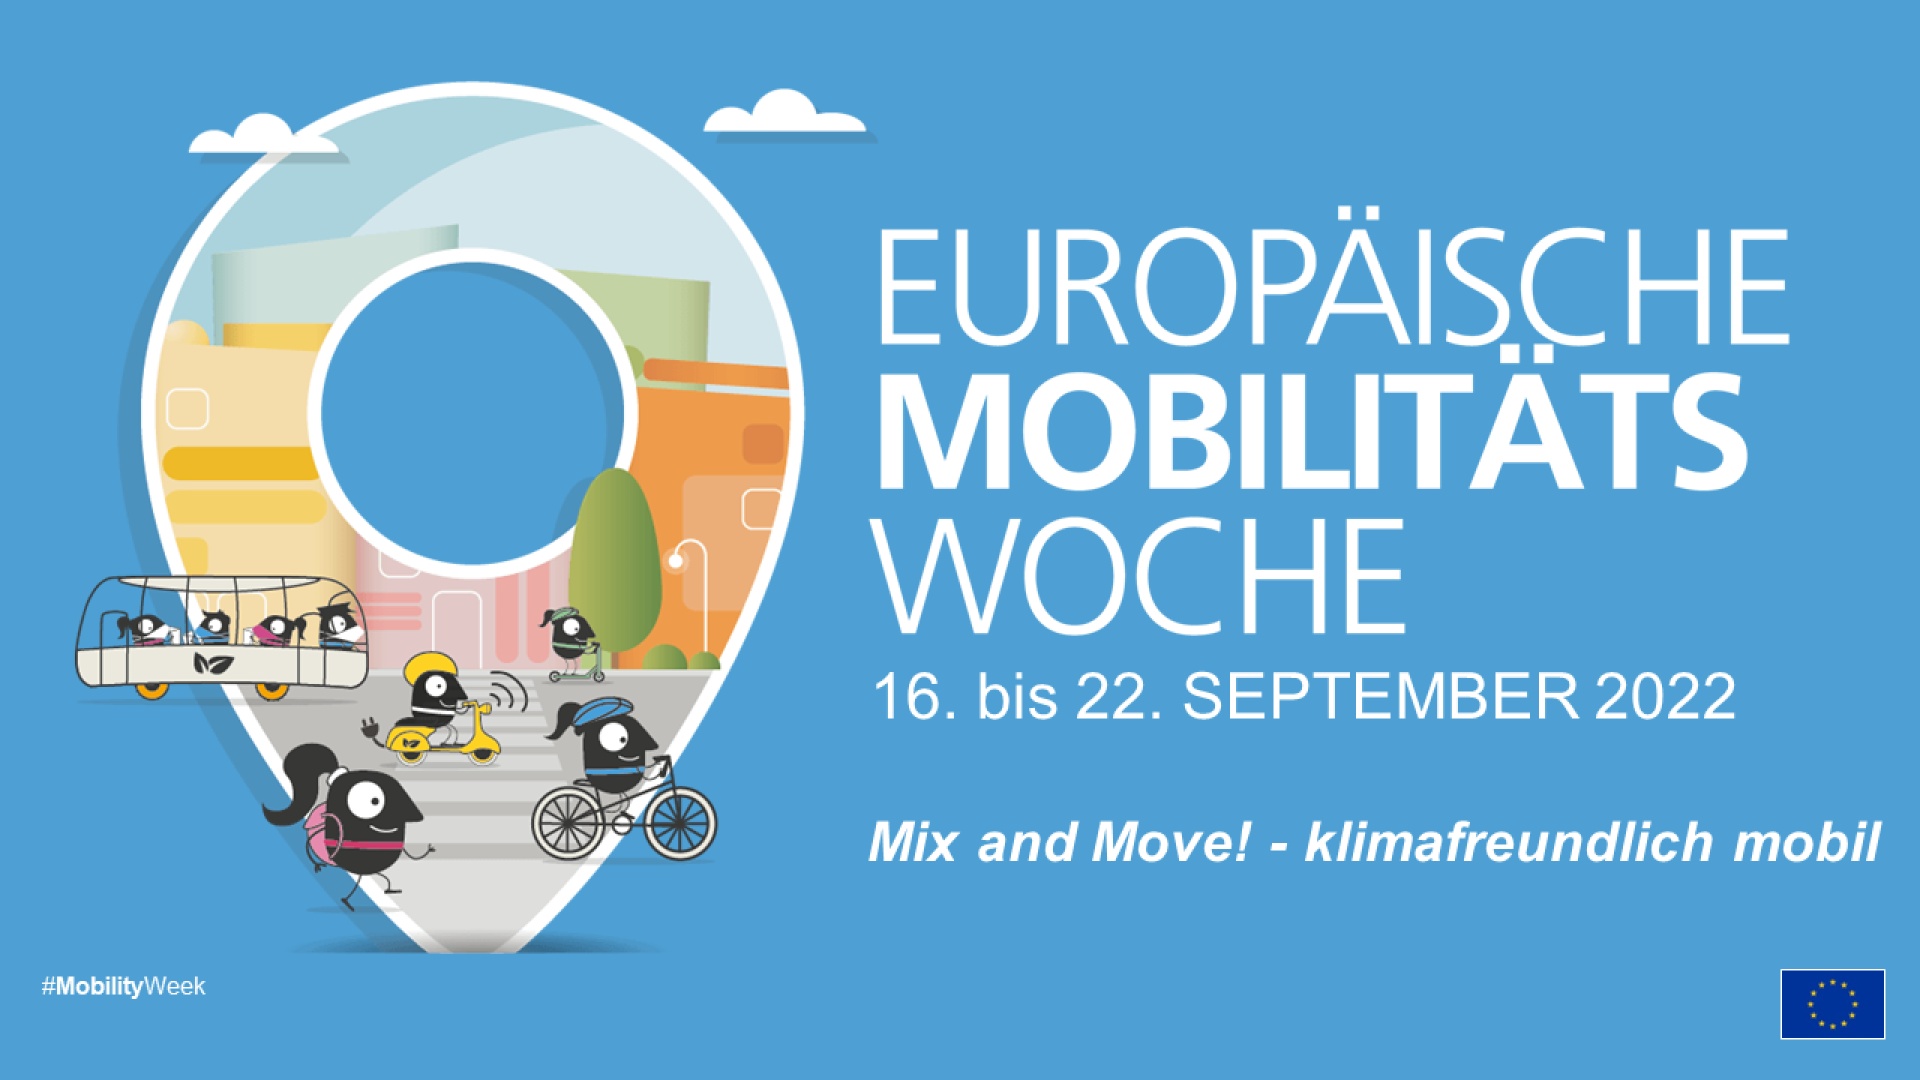 Europäische Mobilitätswoche in der Region Liezen